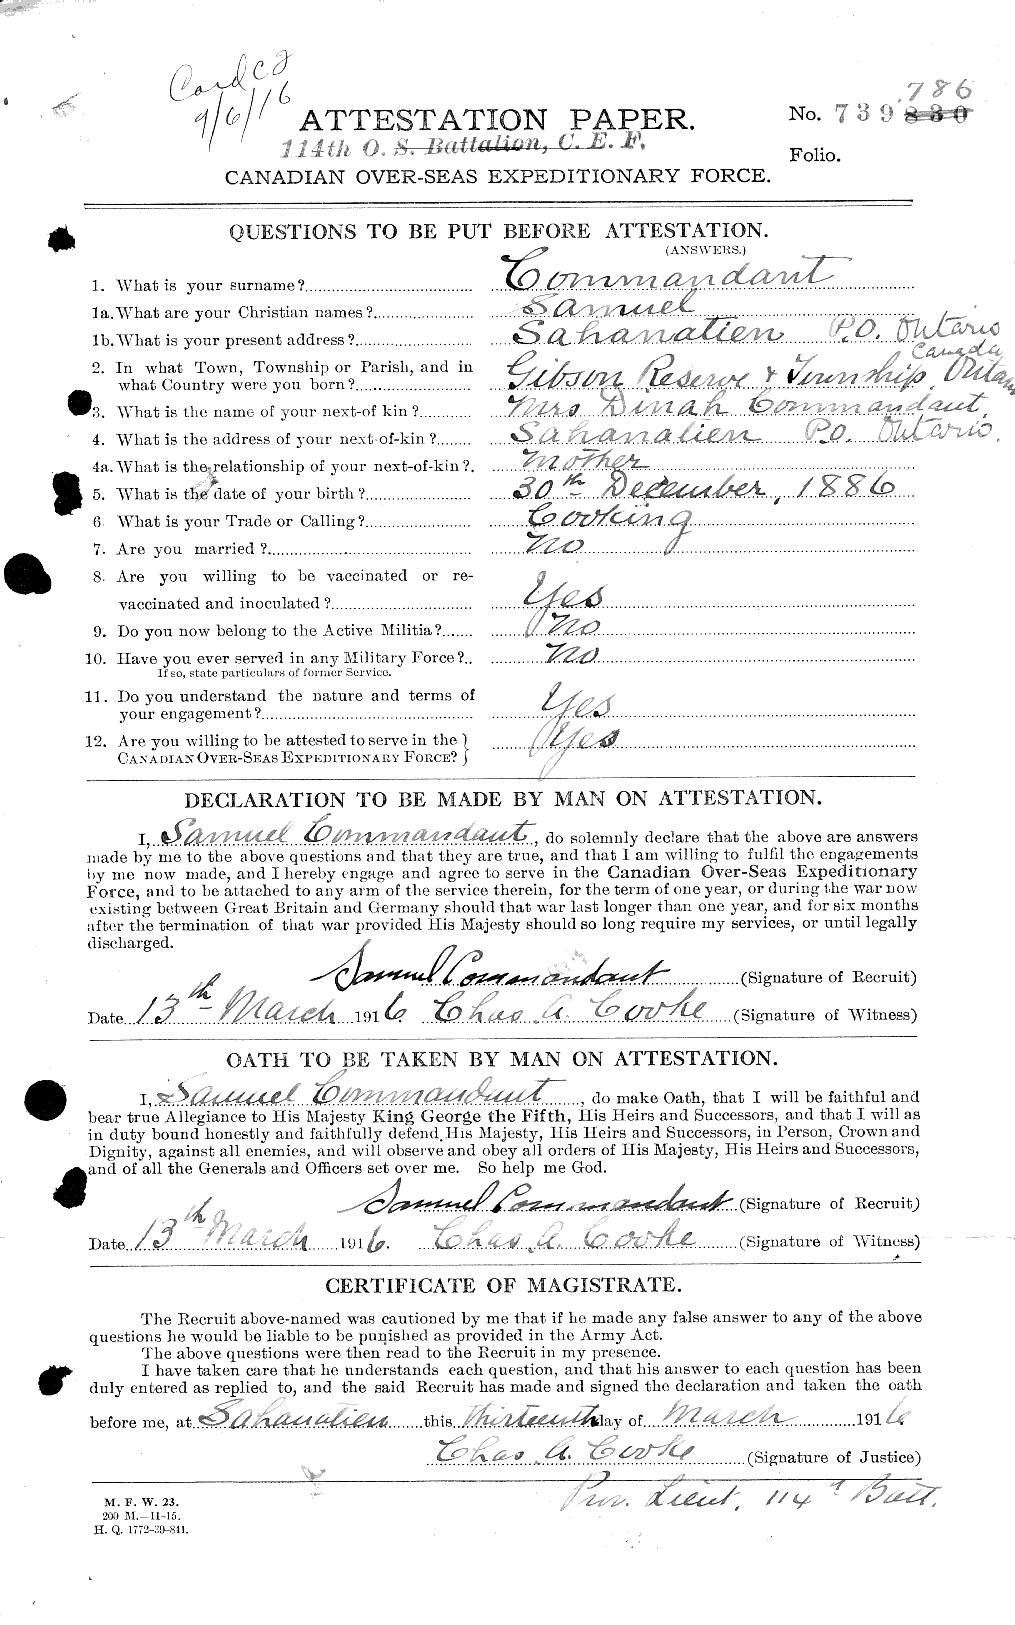 Dossiers du Personnel de la Première Guerre mondiale - CEC 040935a